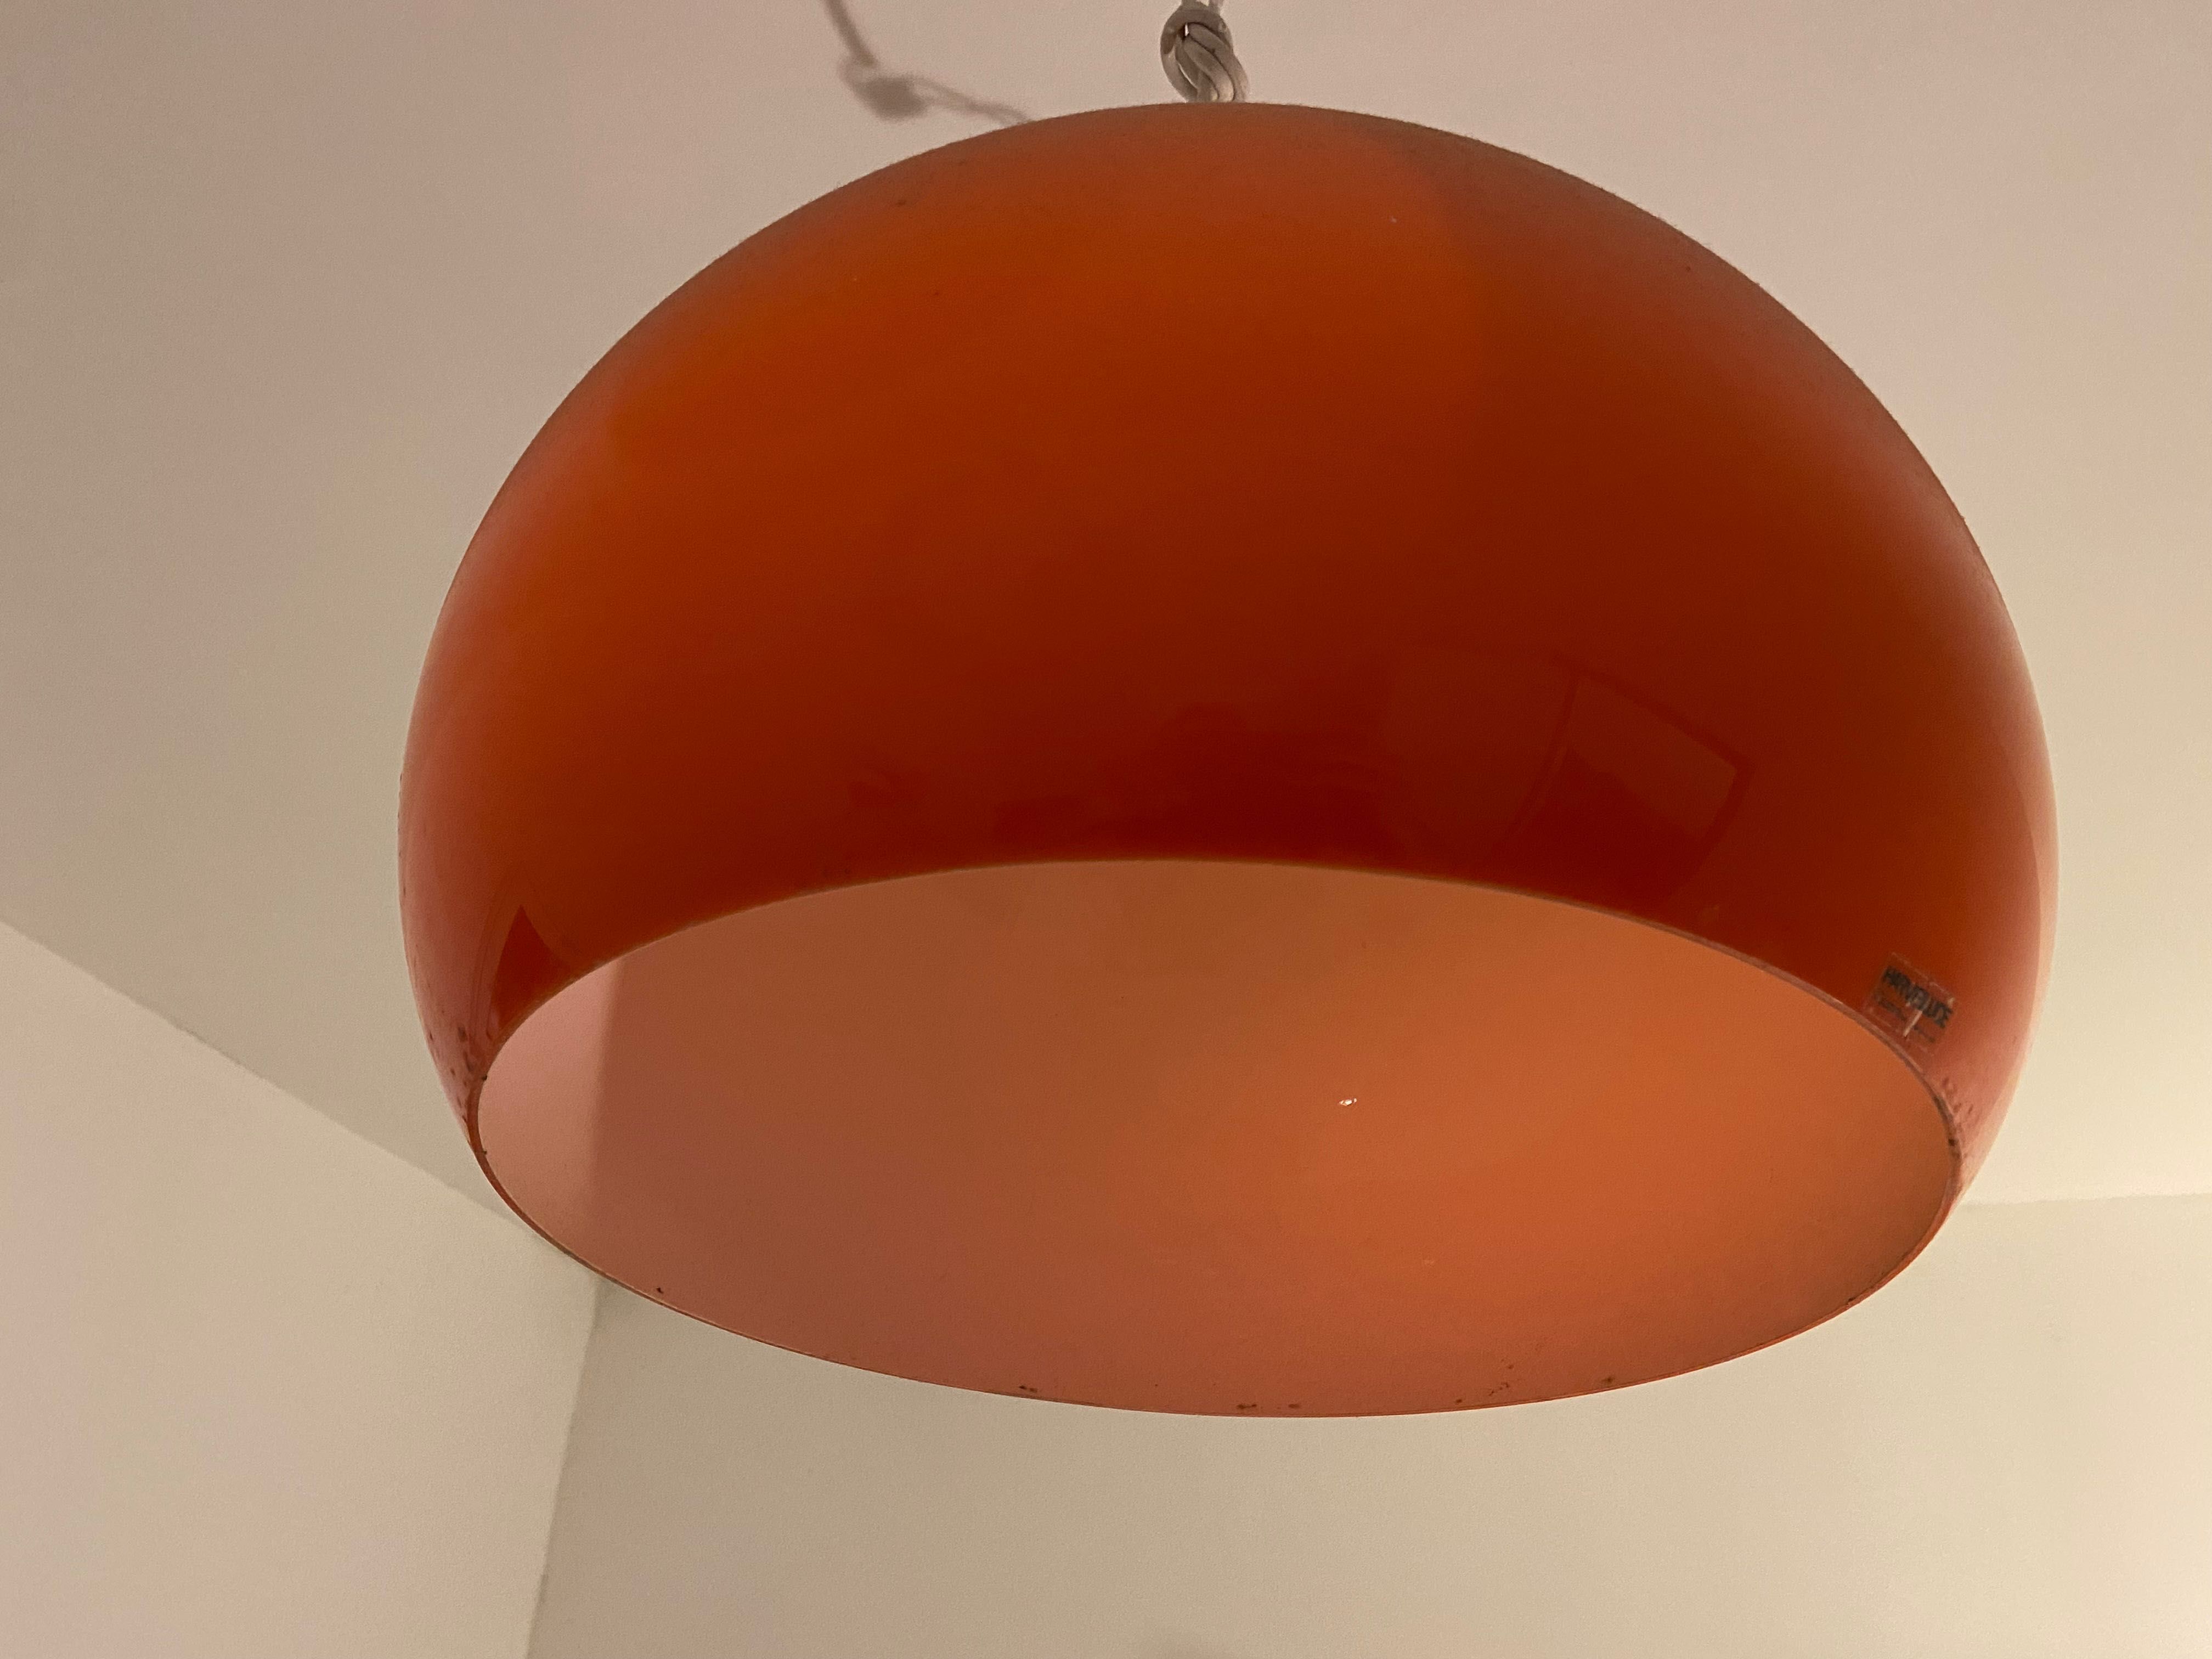 Candeeiro laranja de teto ou suspensão design italiano Guzzini